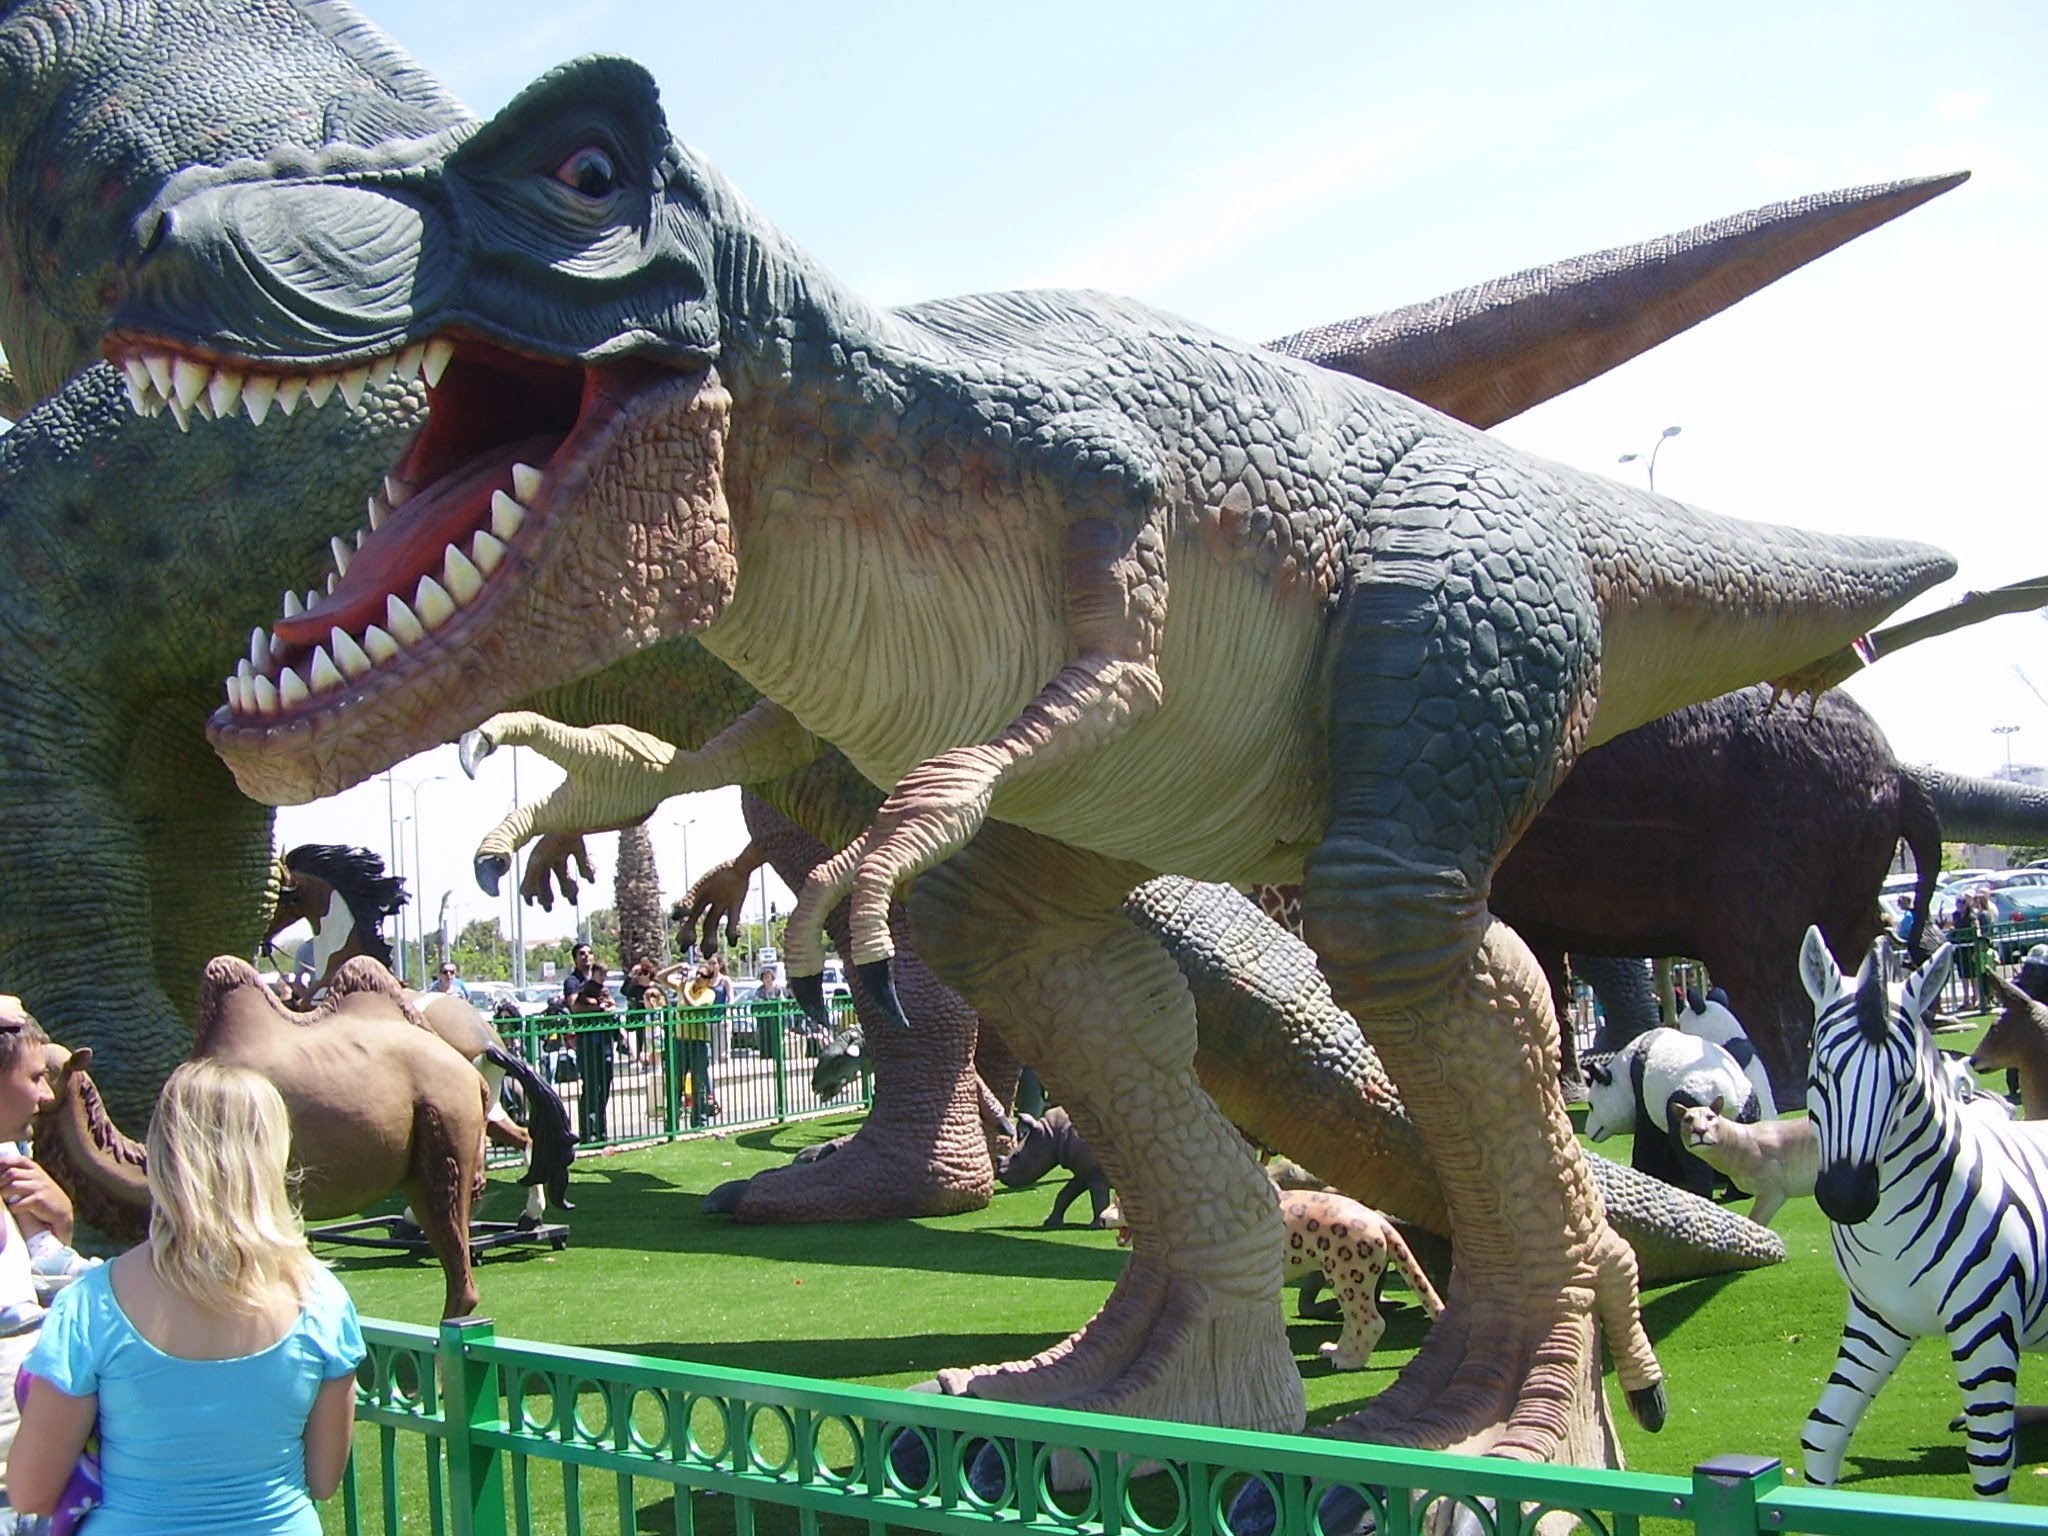 DINOSAUR FUN PARK FOR KIDS - Giant Dinosaurs Jurassic Park For Kids ...